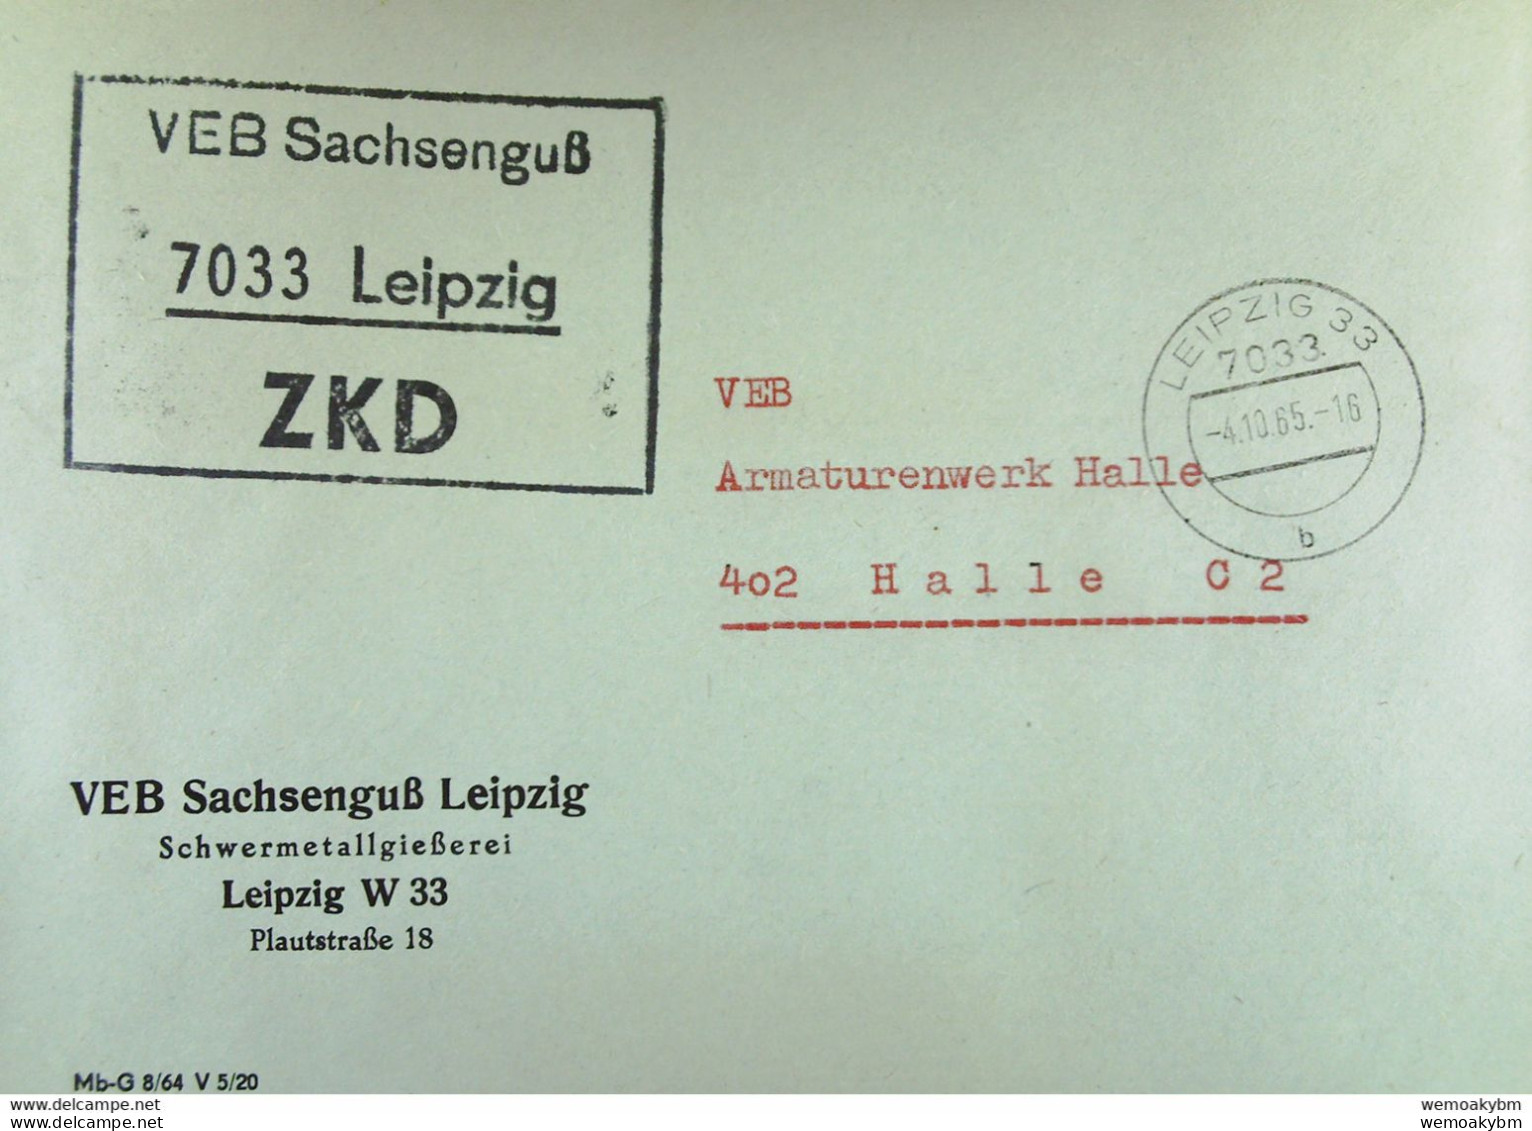 Brief Mit ZKD-Kastenstempel "VEB Sachsenguß 7033 Leipzig" Vom 4.10.65 An VEB Amaturenwerk Halle - Central Mail Service